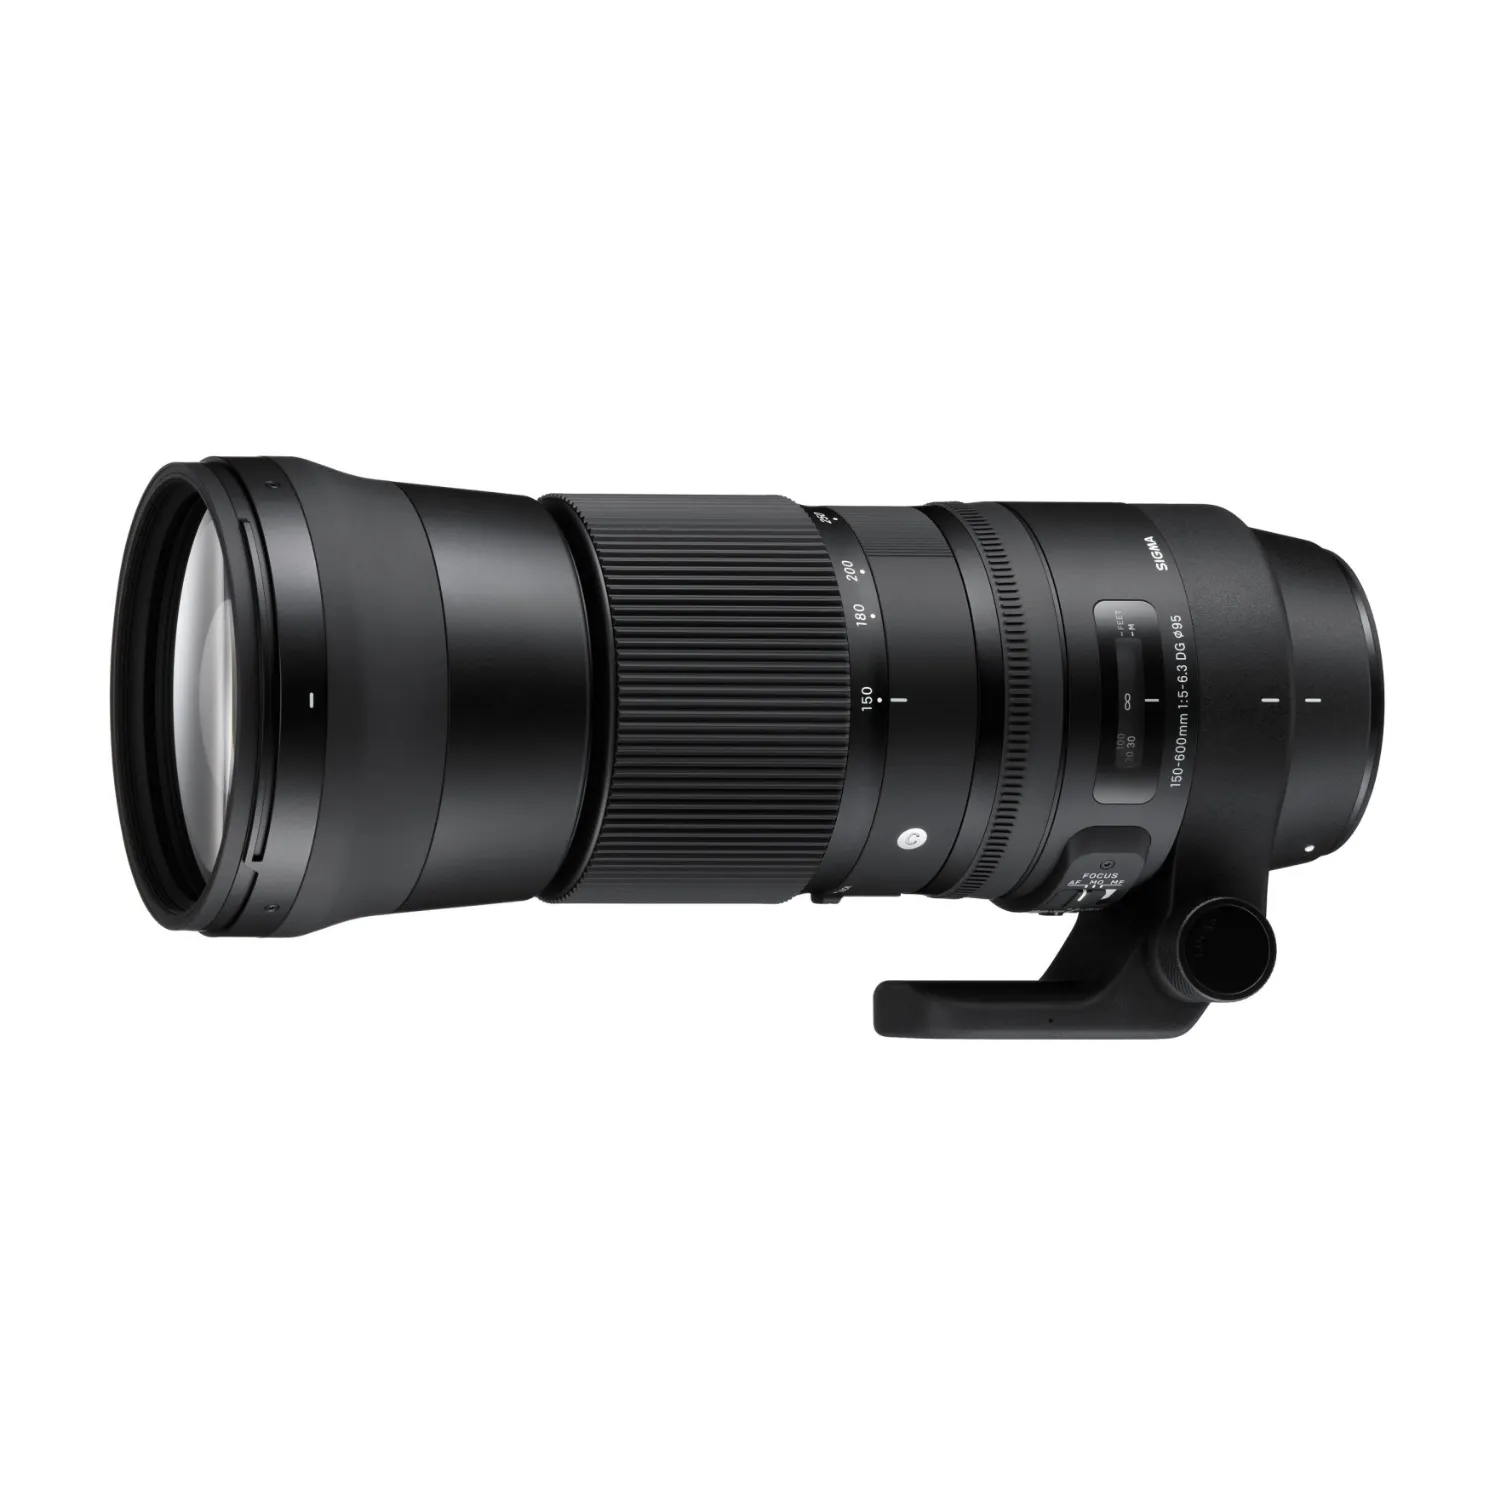 Sigma 150-600mm f/5-6.3 DG OS Contemporary Lens for Nikon